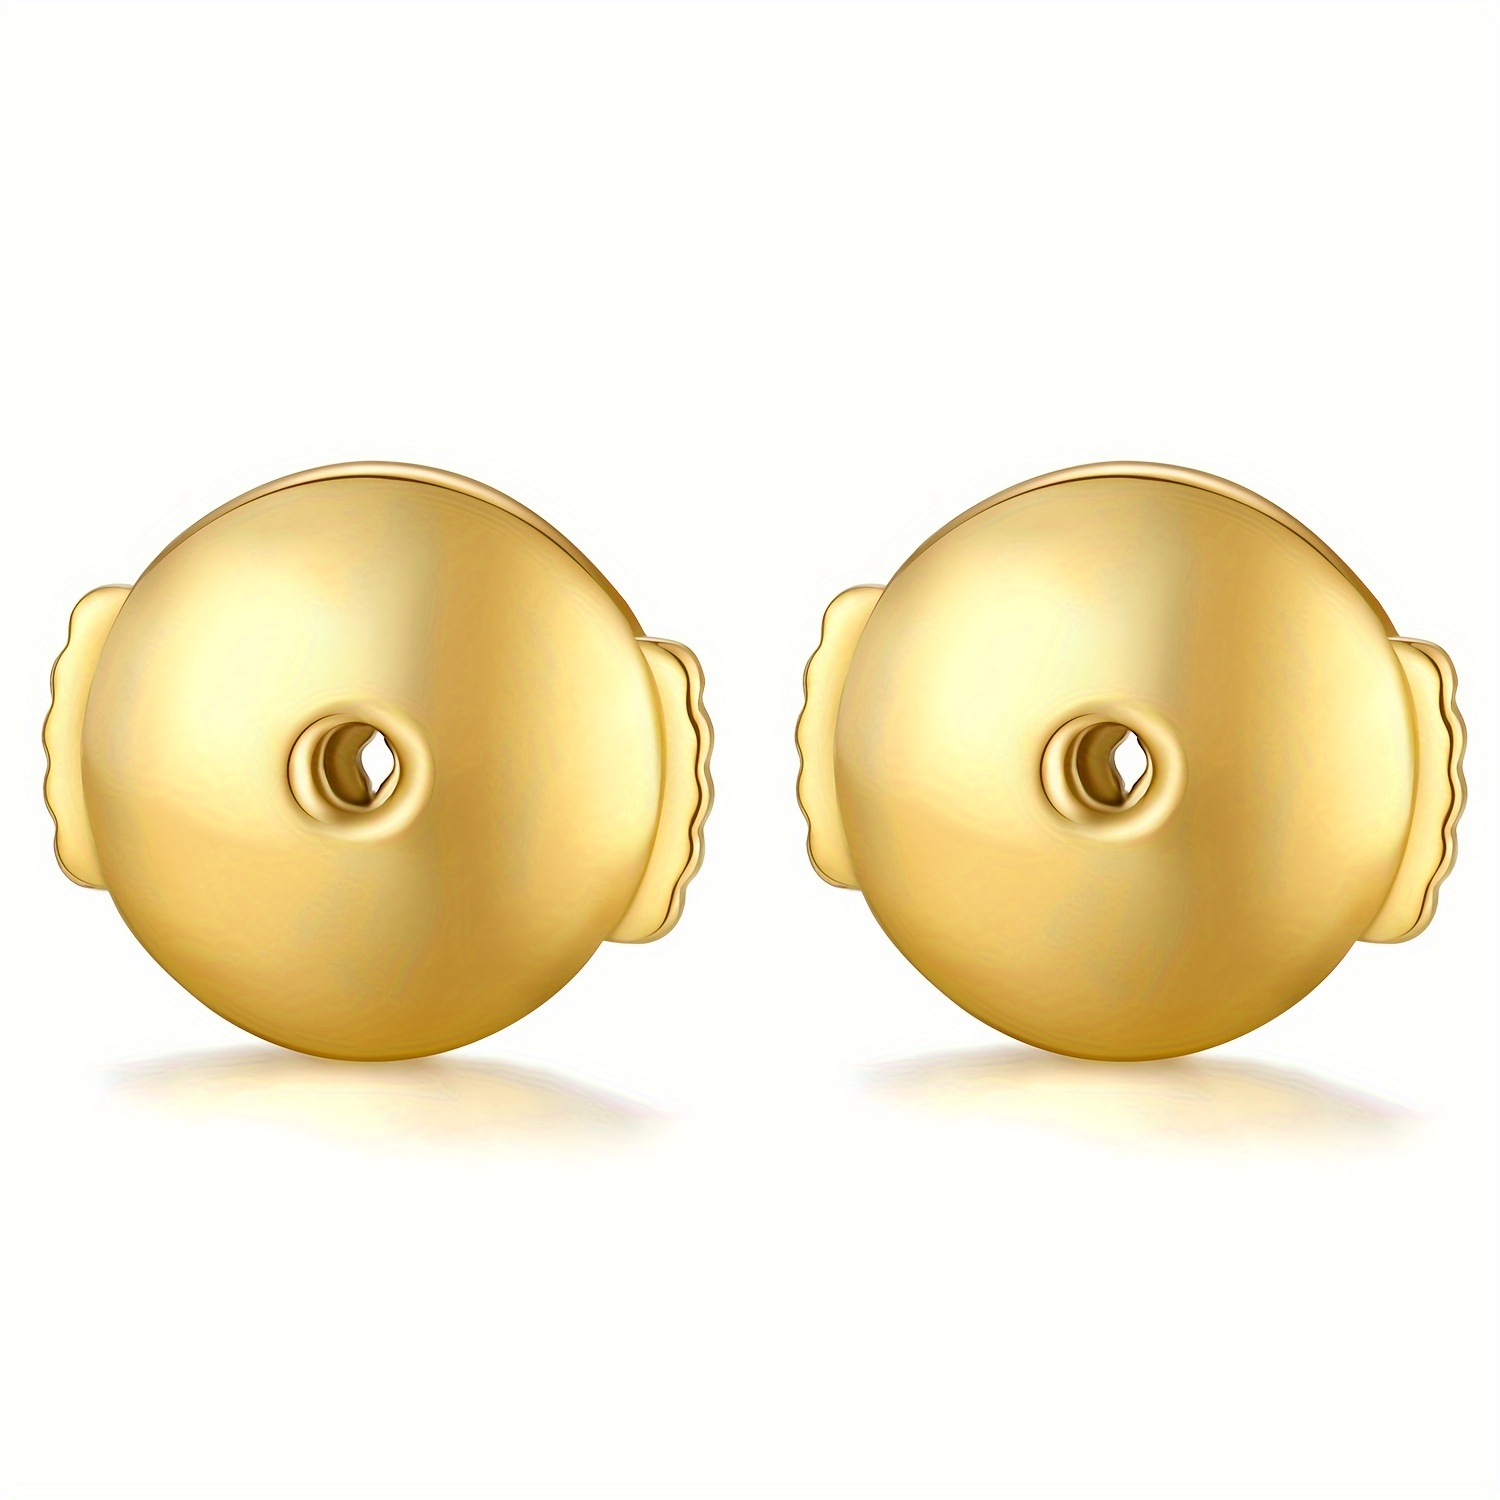  Locking Earring Backs for Studs,18k Gold Earrings Back for  Studs Secure,Hypoallergenic Earring Backs Apply to Earring Backs for Droopy  Ears (6 Pairs)